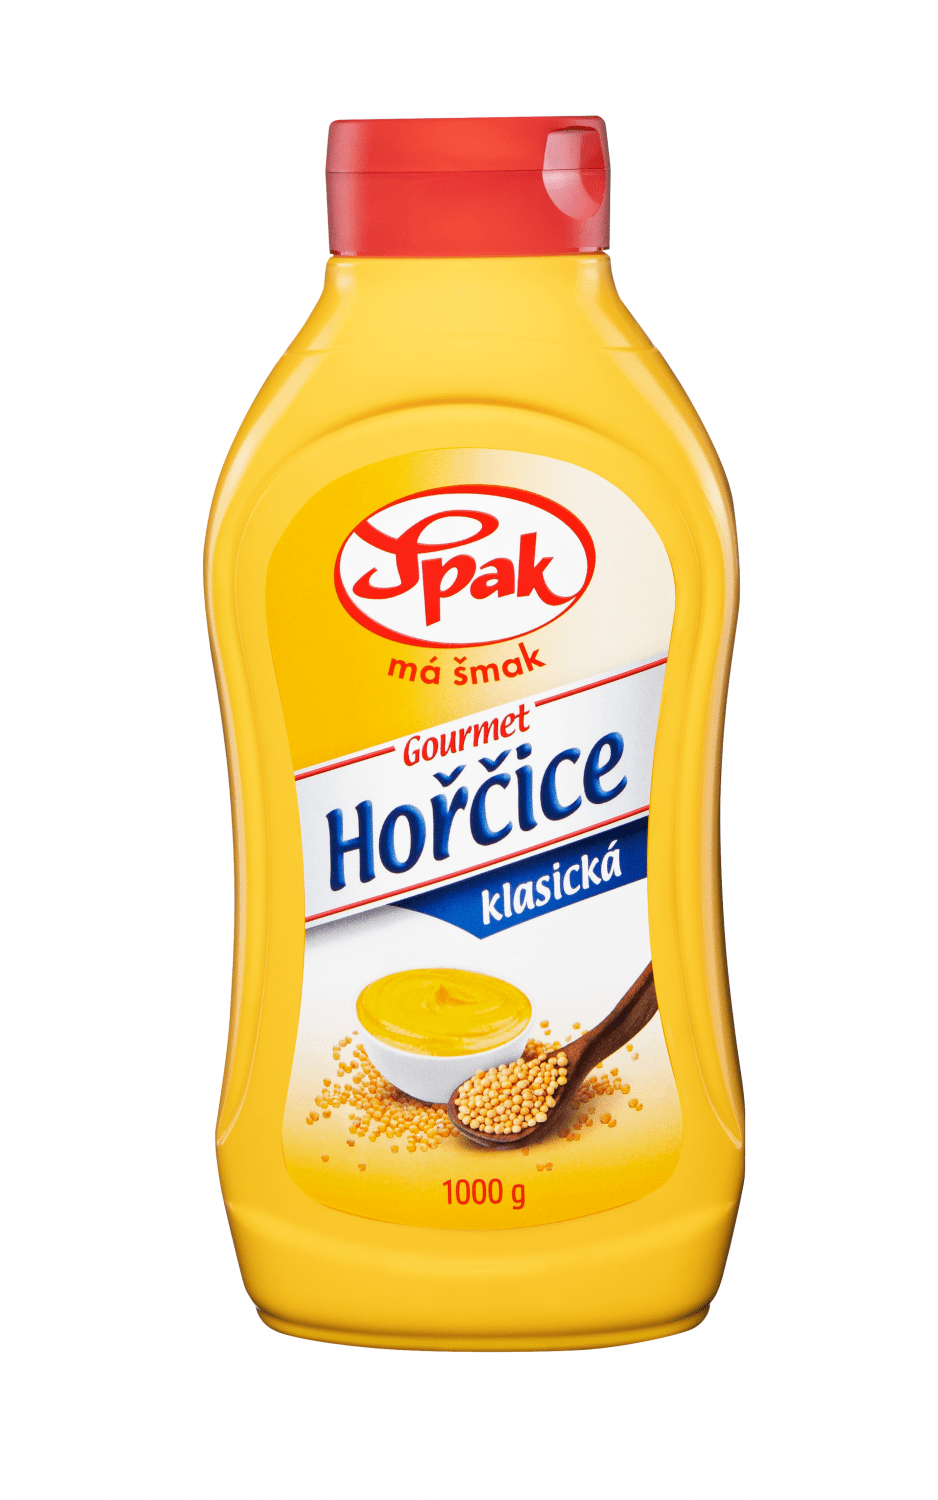 Horcice-Gourmet-klasicka-1000-ml (1)